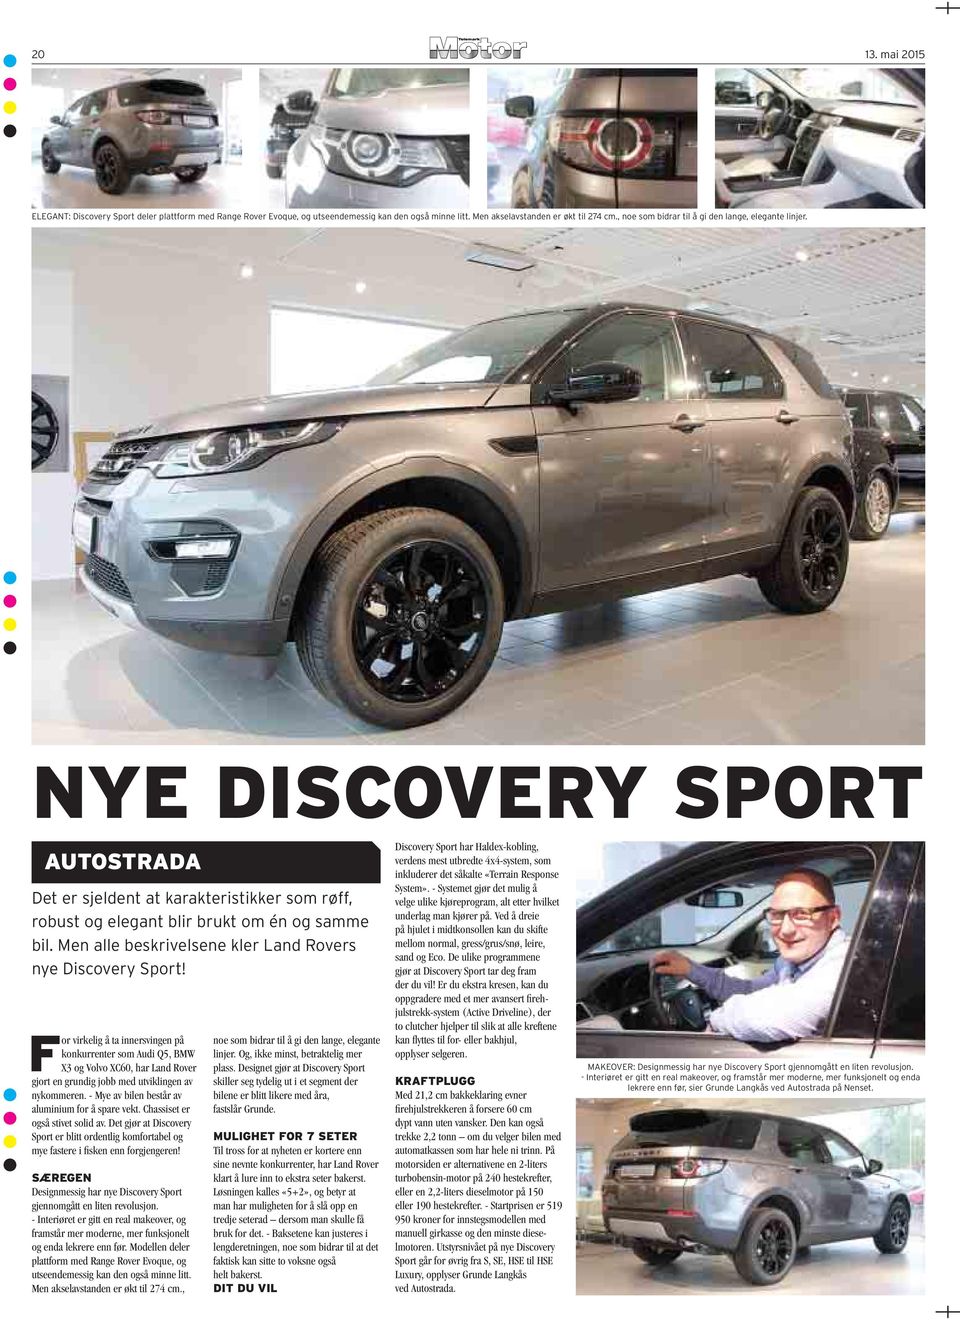 Men alle beskrivelsene kler Land Rovers nye Discovery Sport!